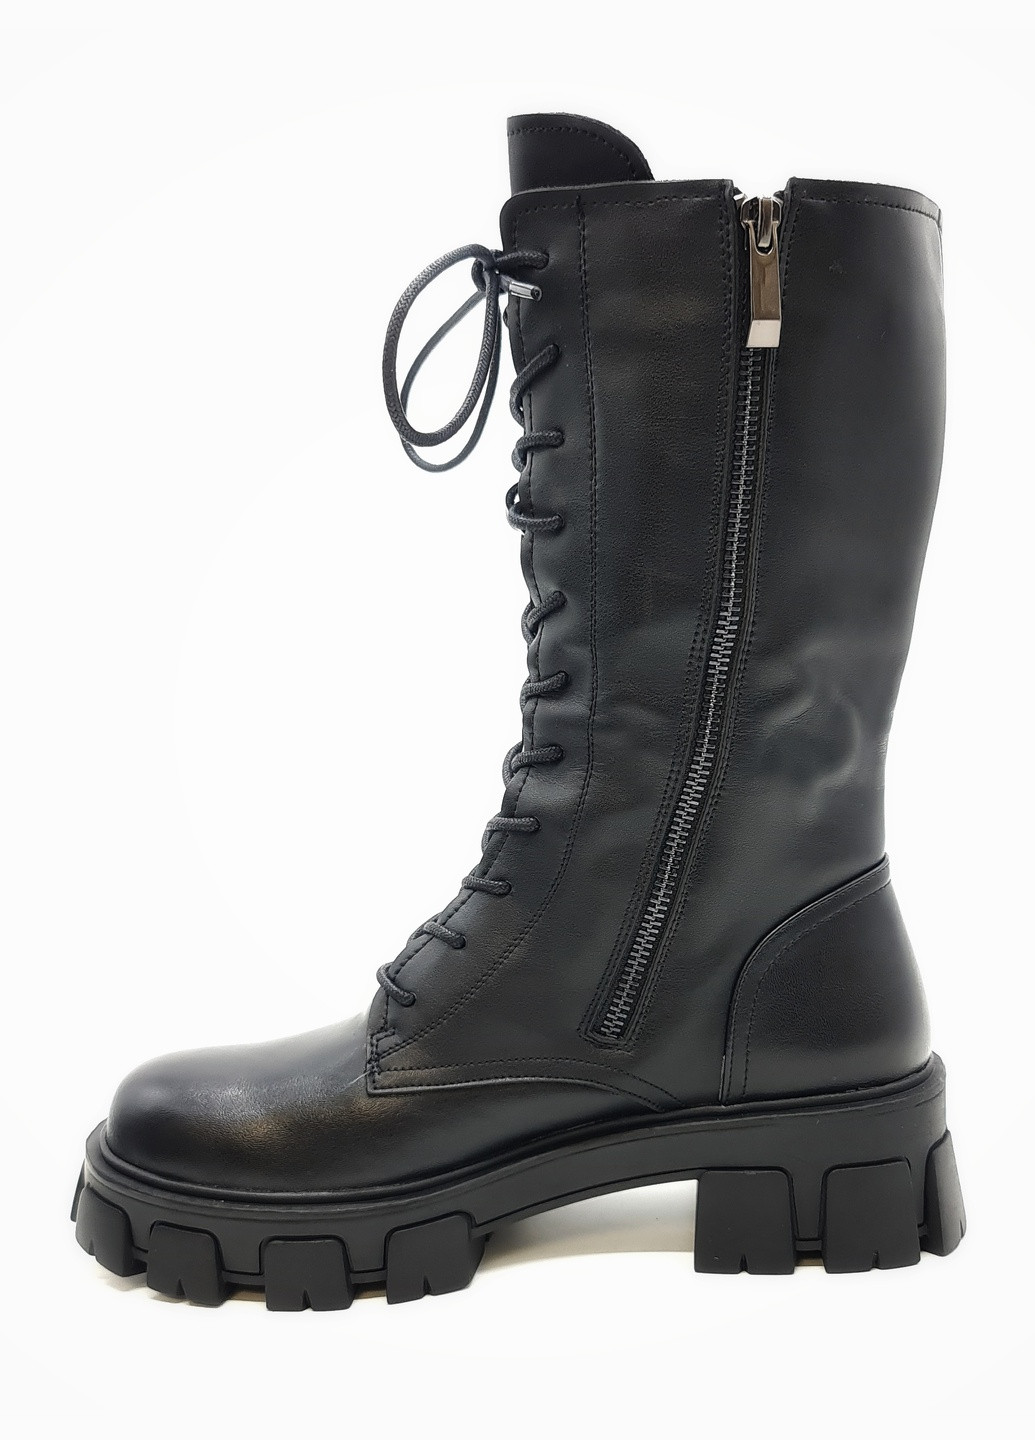 Осенние женские ботинки на овчине черные кожаные eg-17-1 24 см (р) Egga